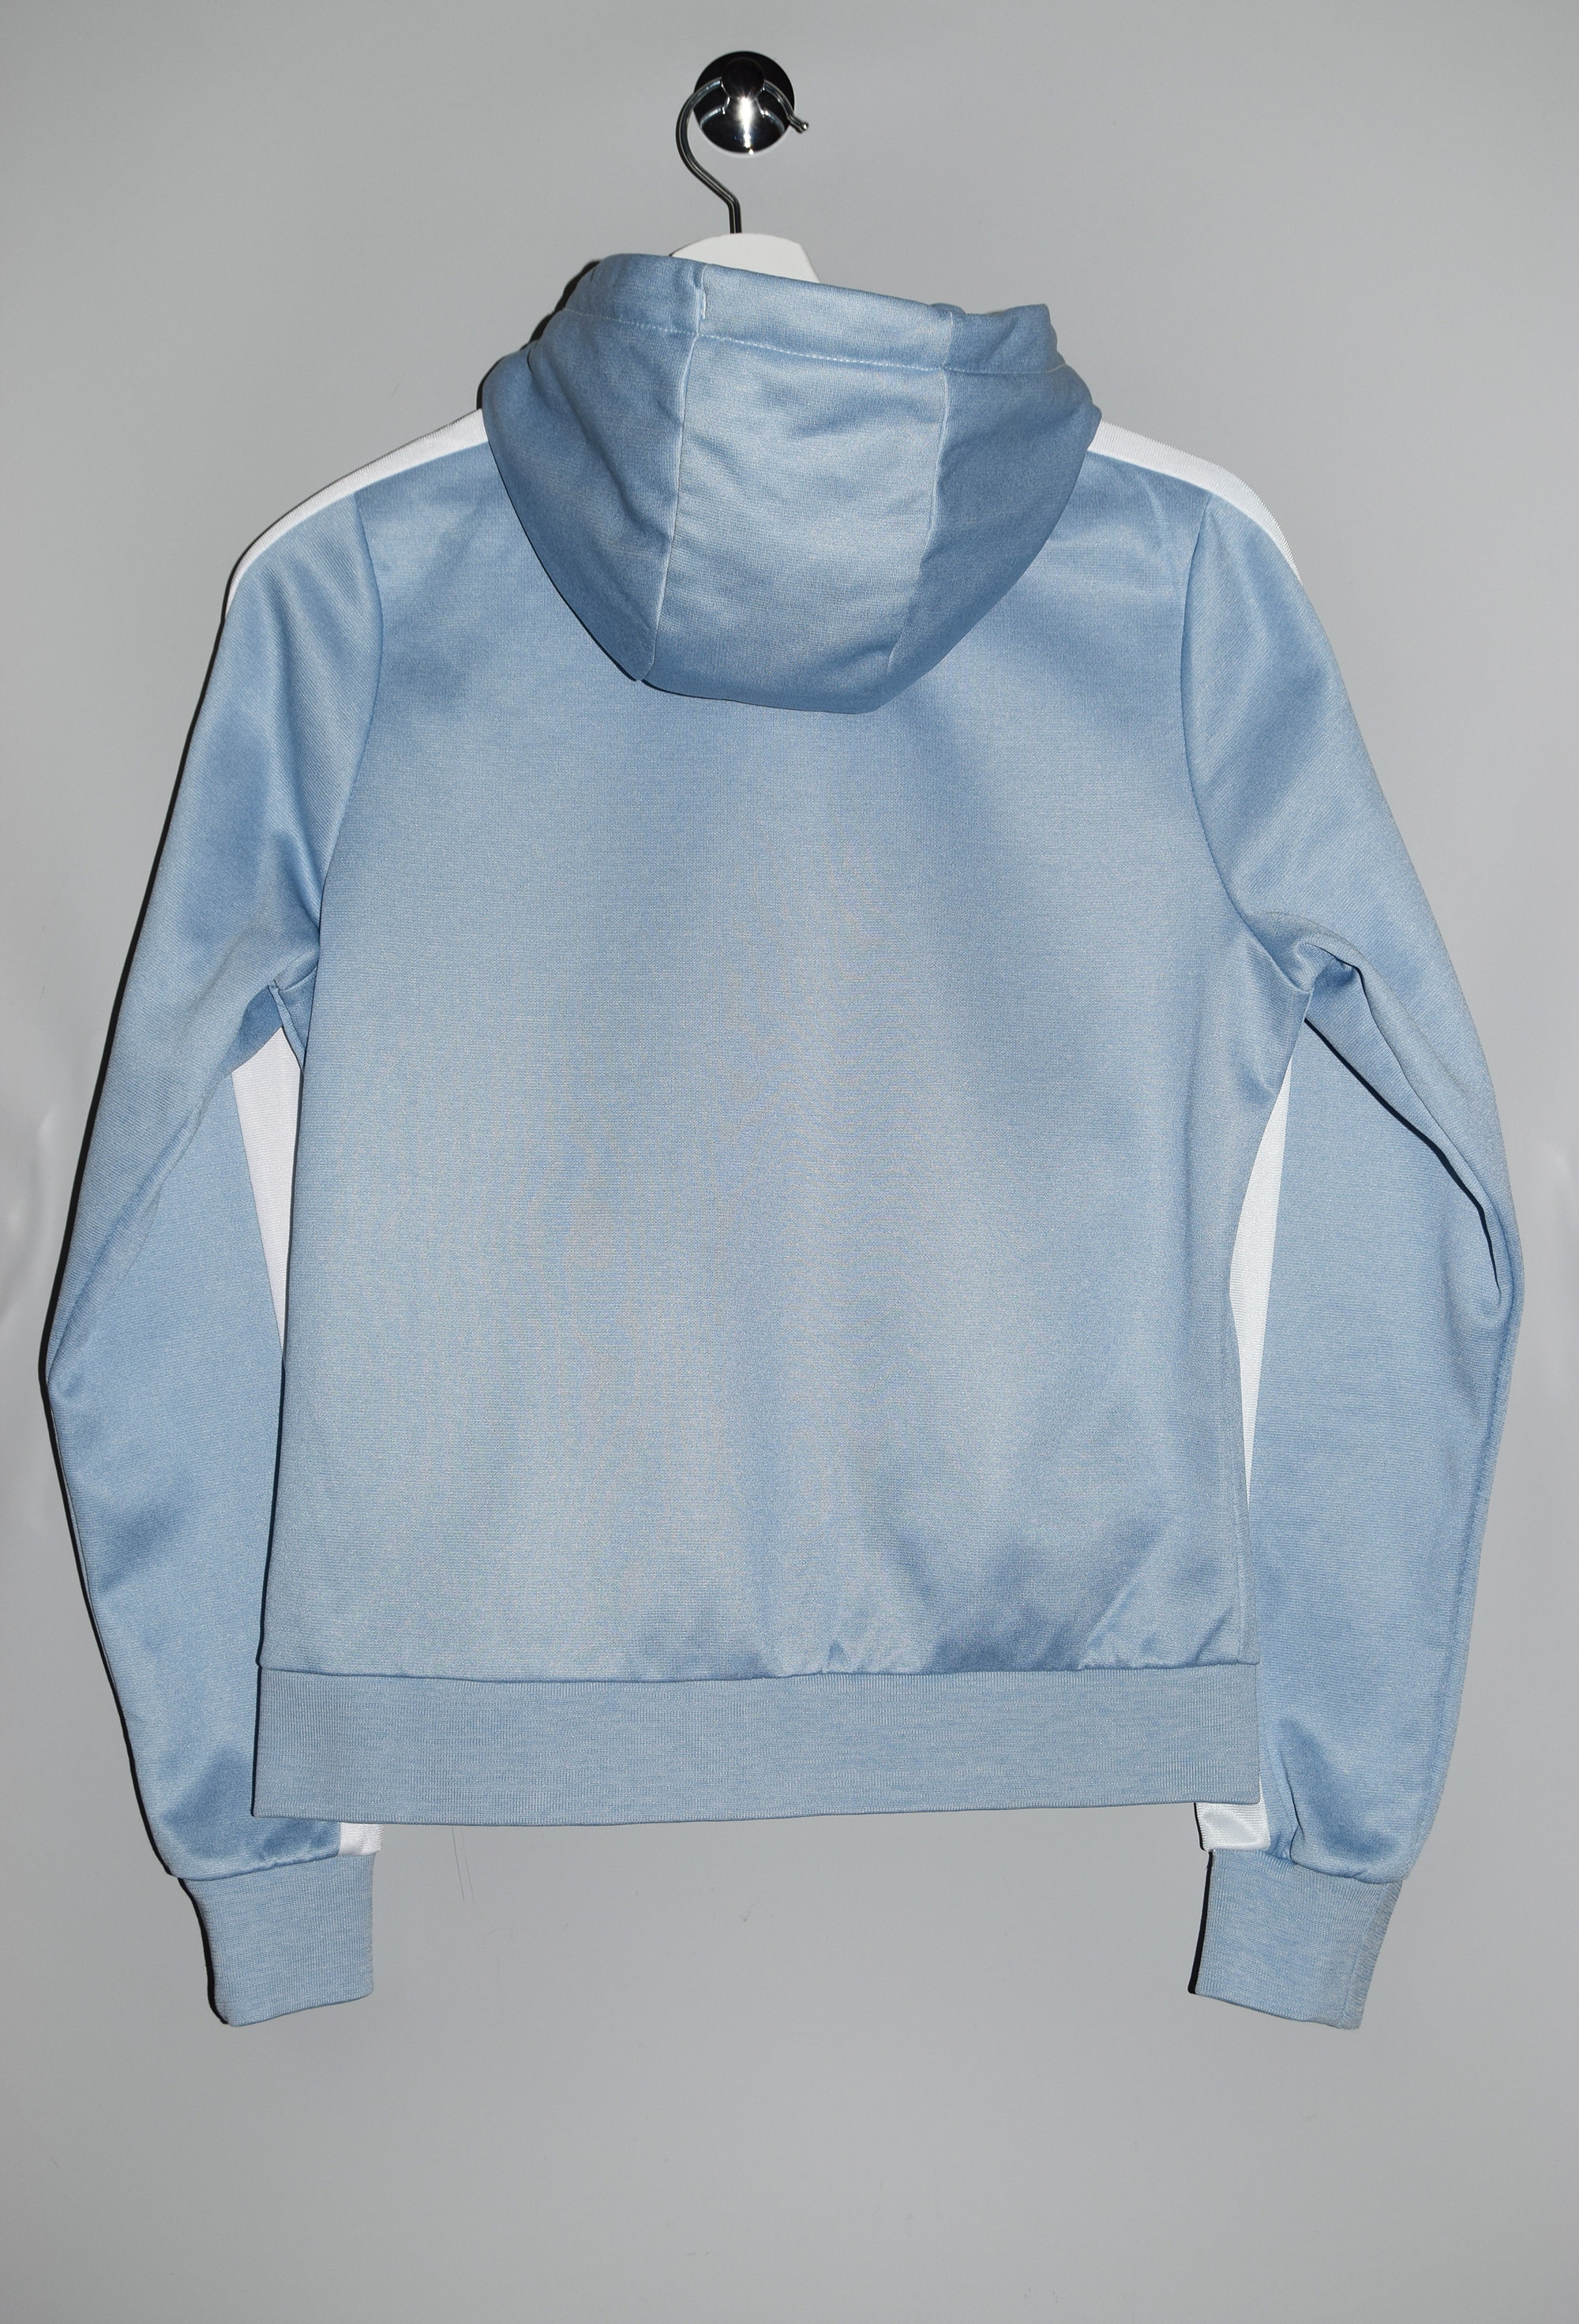 Ellesse Hoodie Full Zip Light UK Casual Jumper 12 Sweatshirt Logo Patch 8 Sportswear Etsy Streetwear Hooded - EU 40 Blue Active Women\'s US